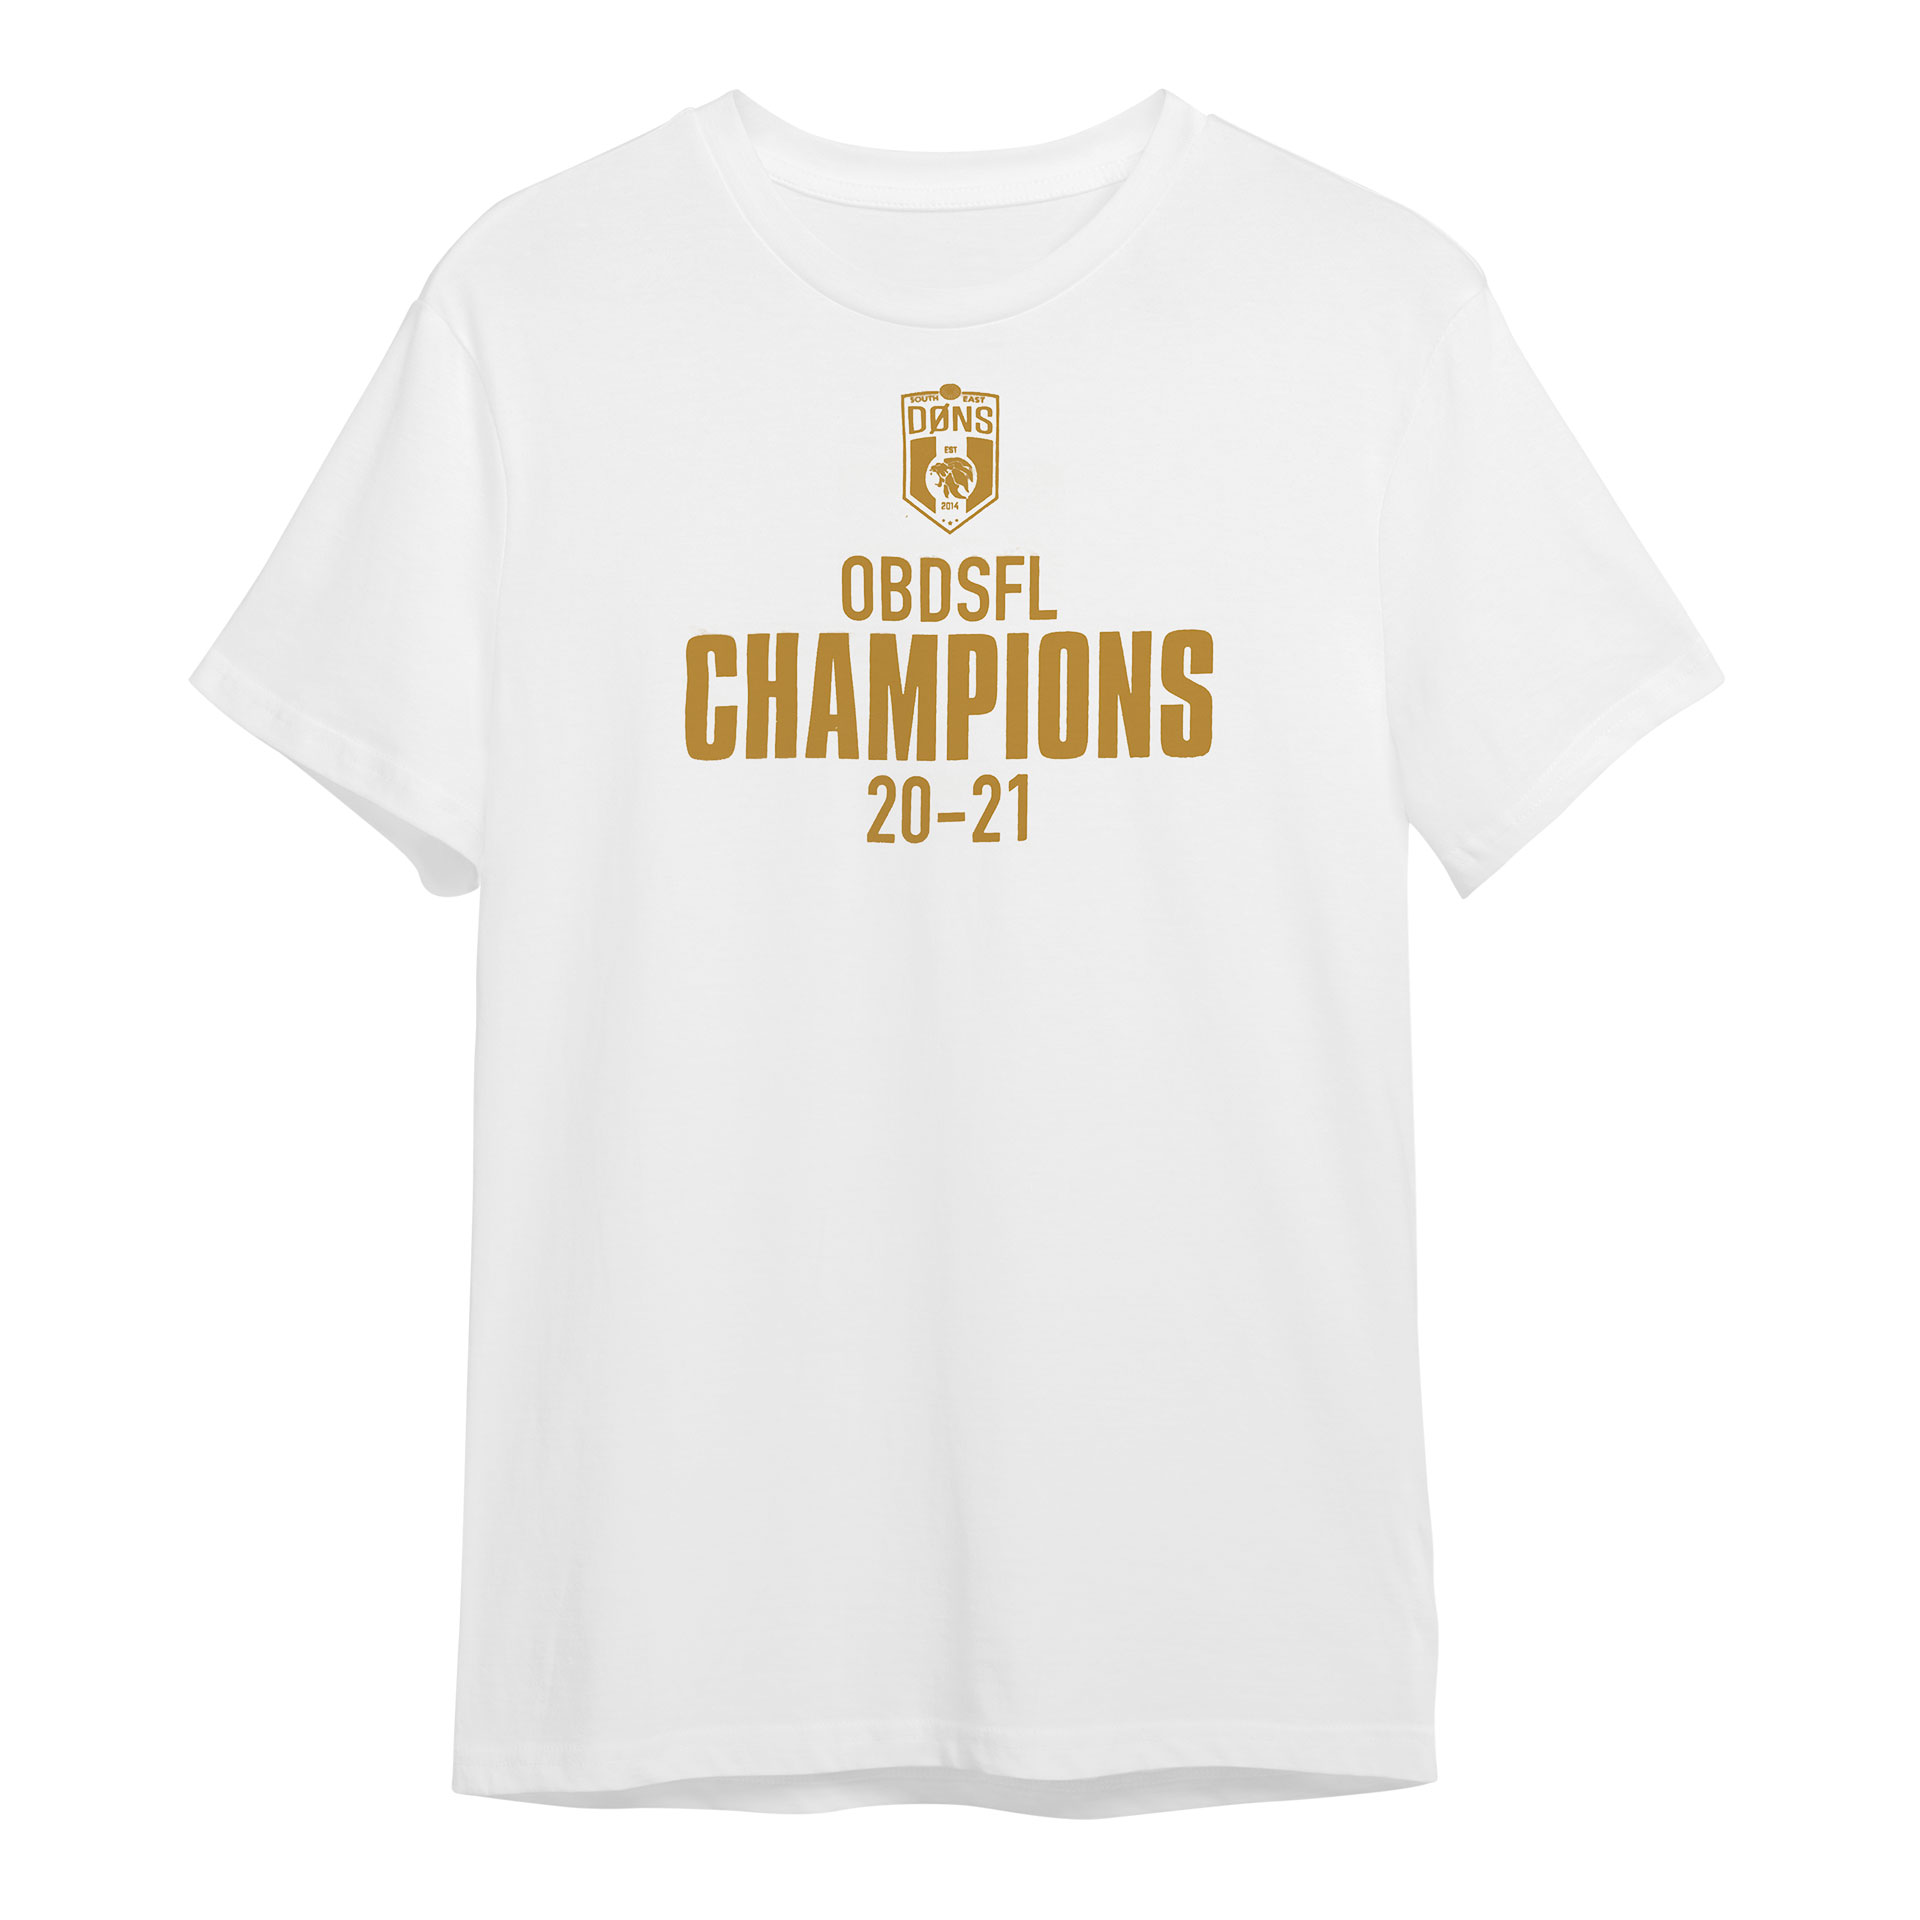 Champions Tee - White